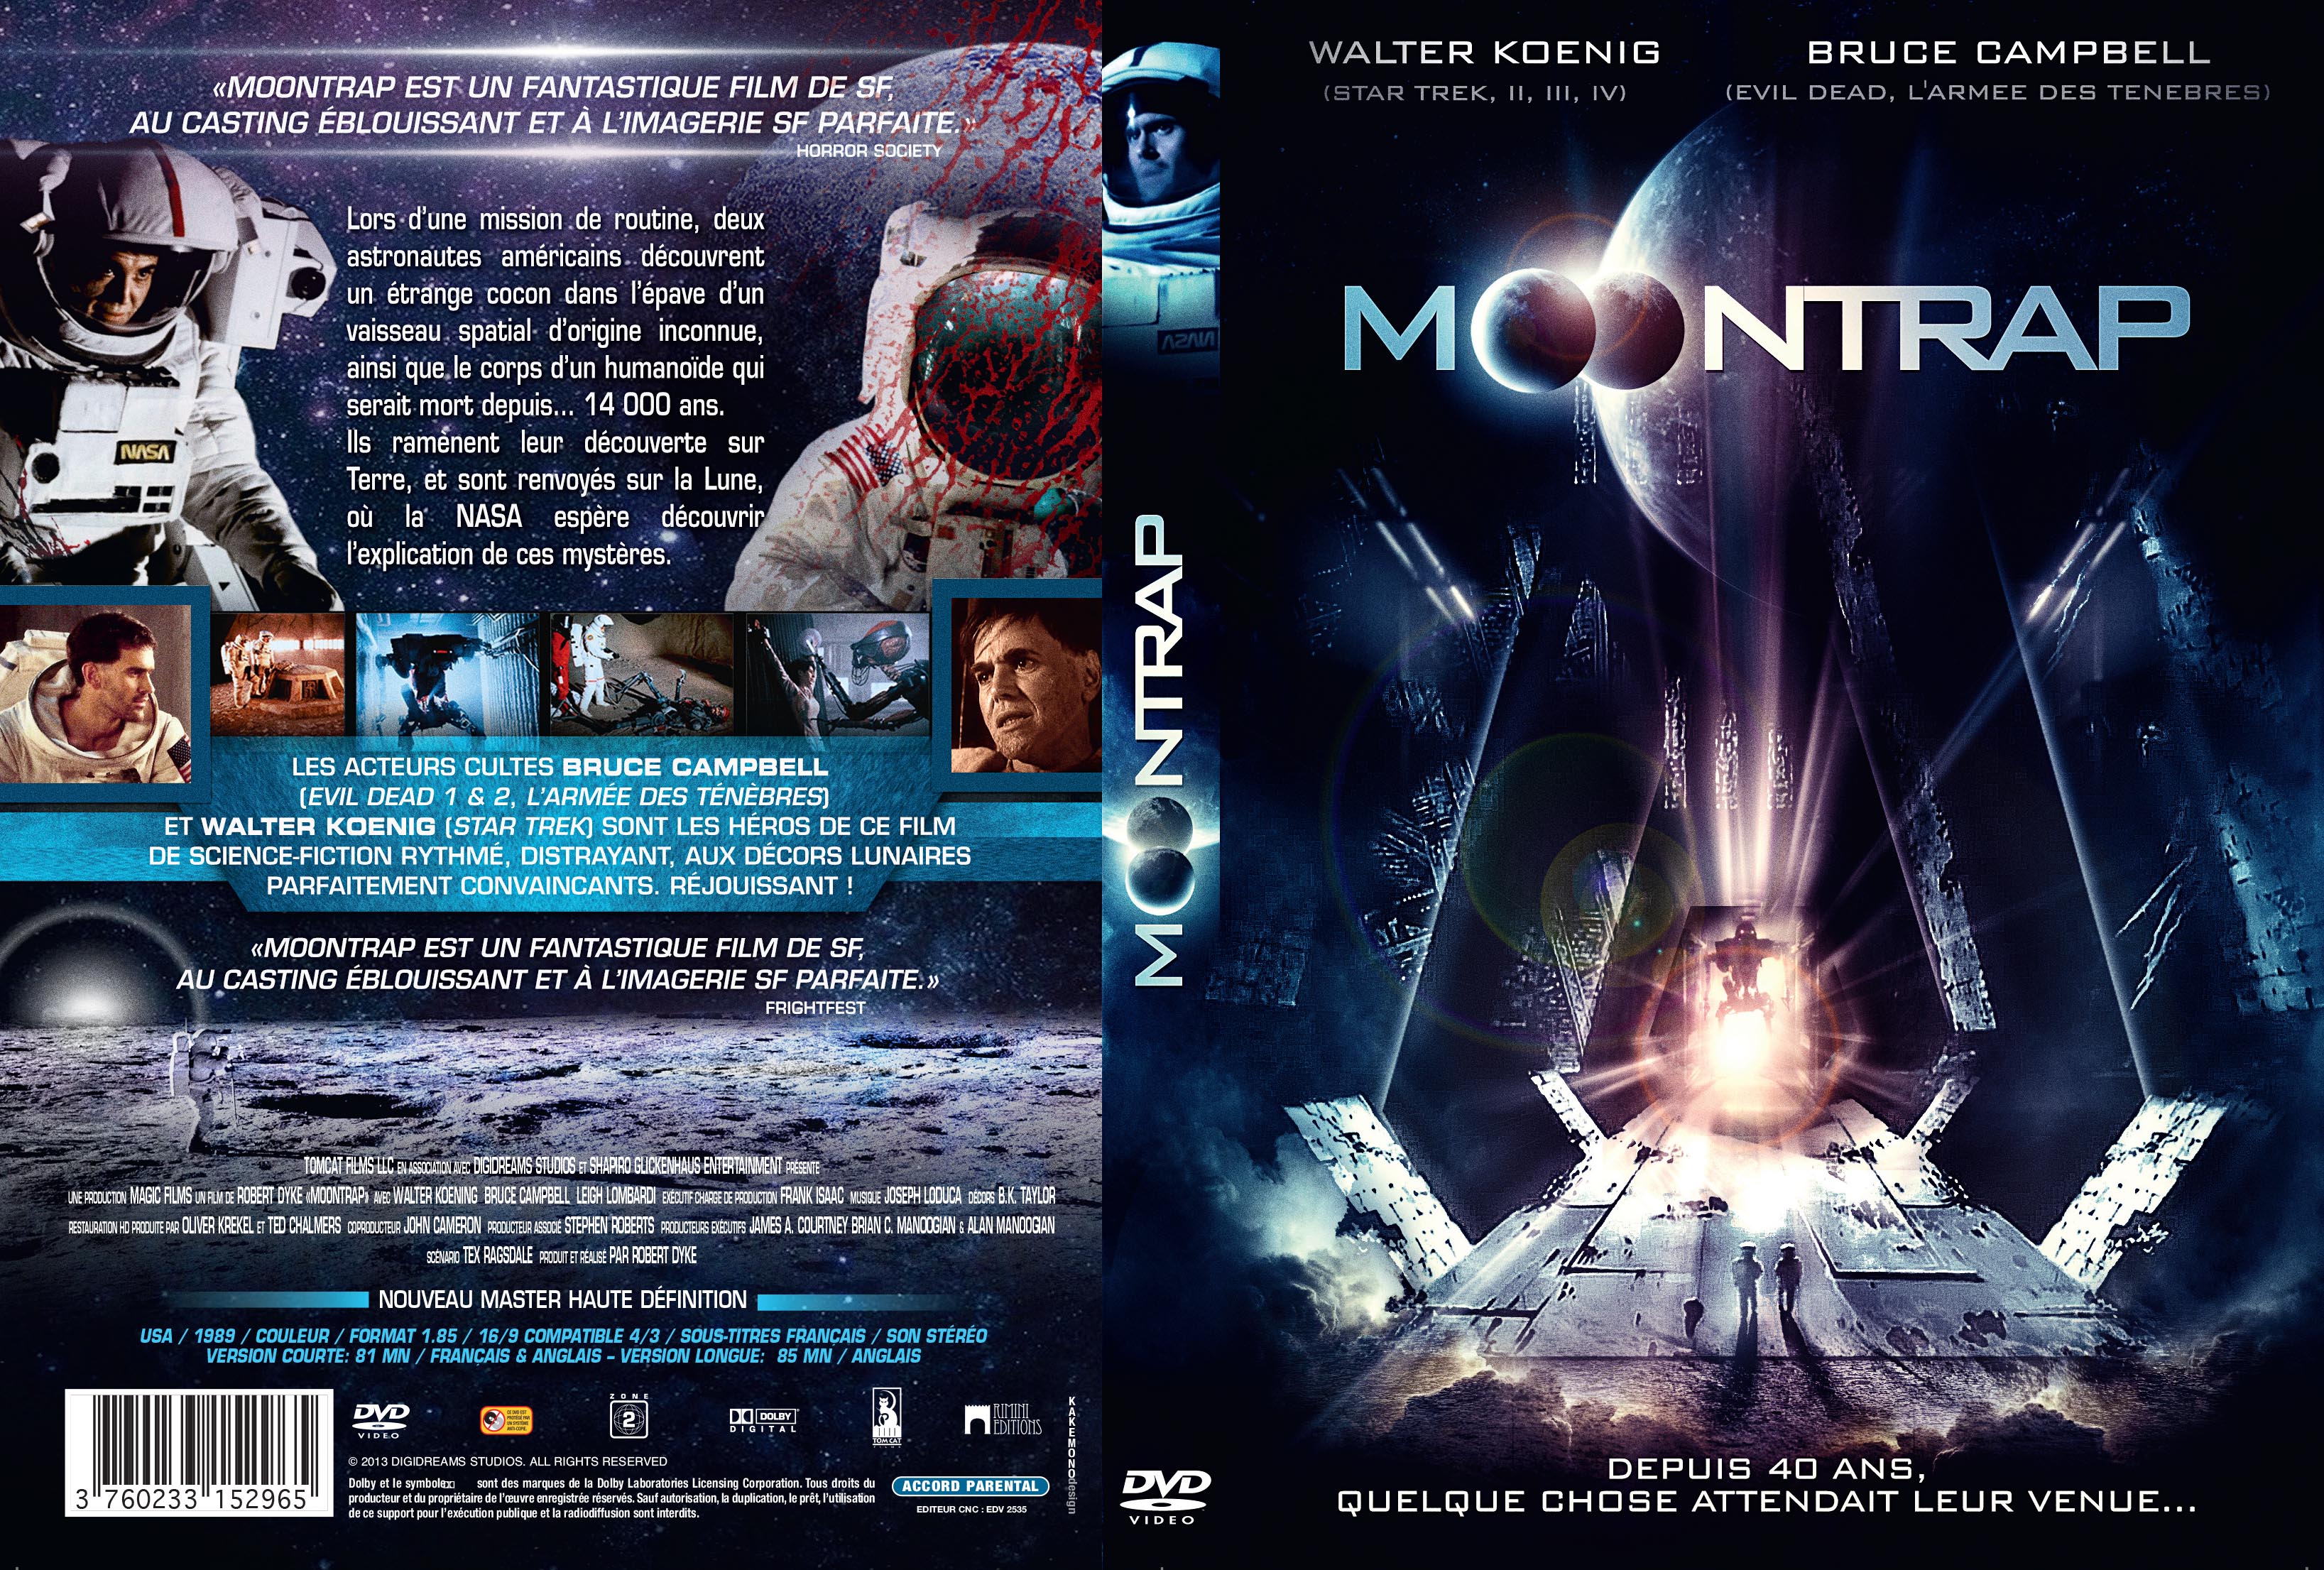 Jaquette DVD Moontrap